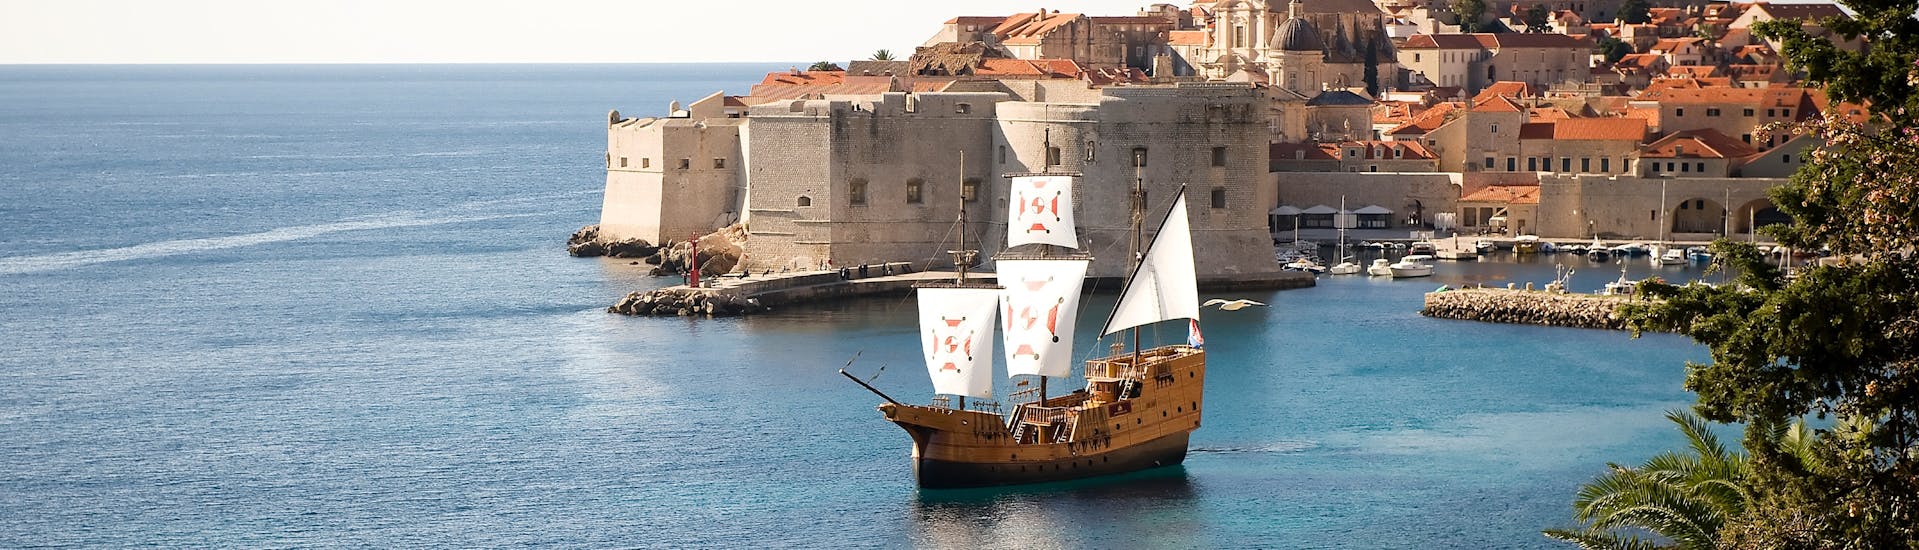 Image du bateau traditionnel Karaka, utilisé pour la balde en bateau à la vieille ville de Dubrovnik avec visite à pied avec Karaka Dubrovnik.